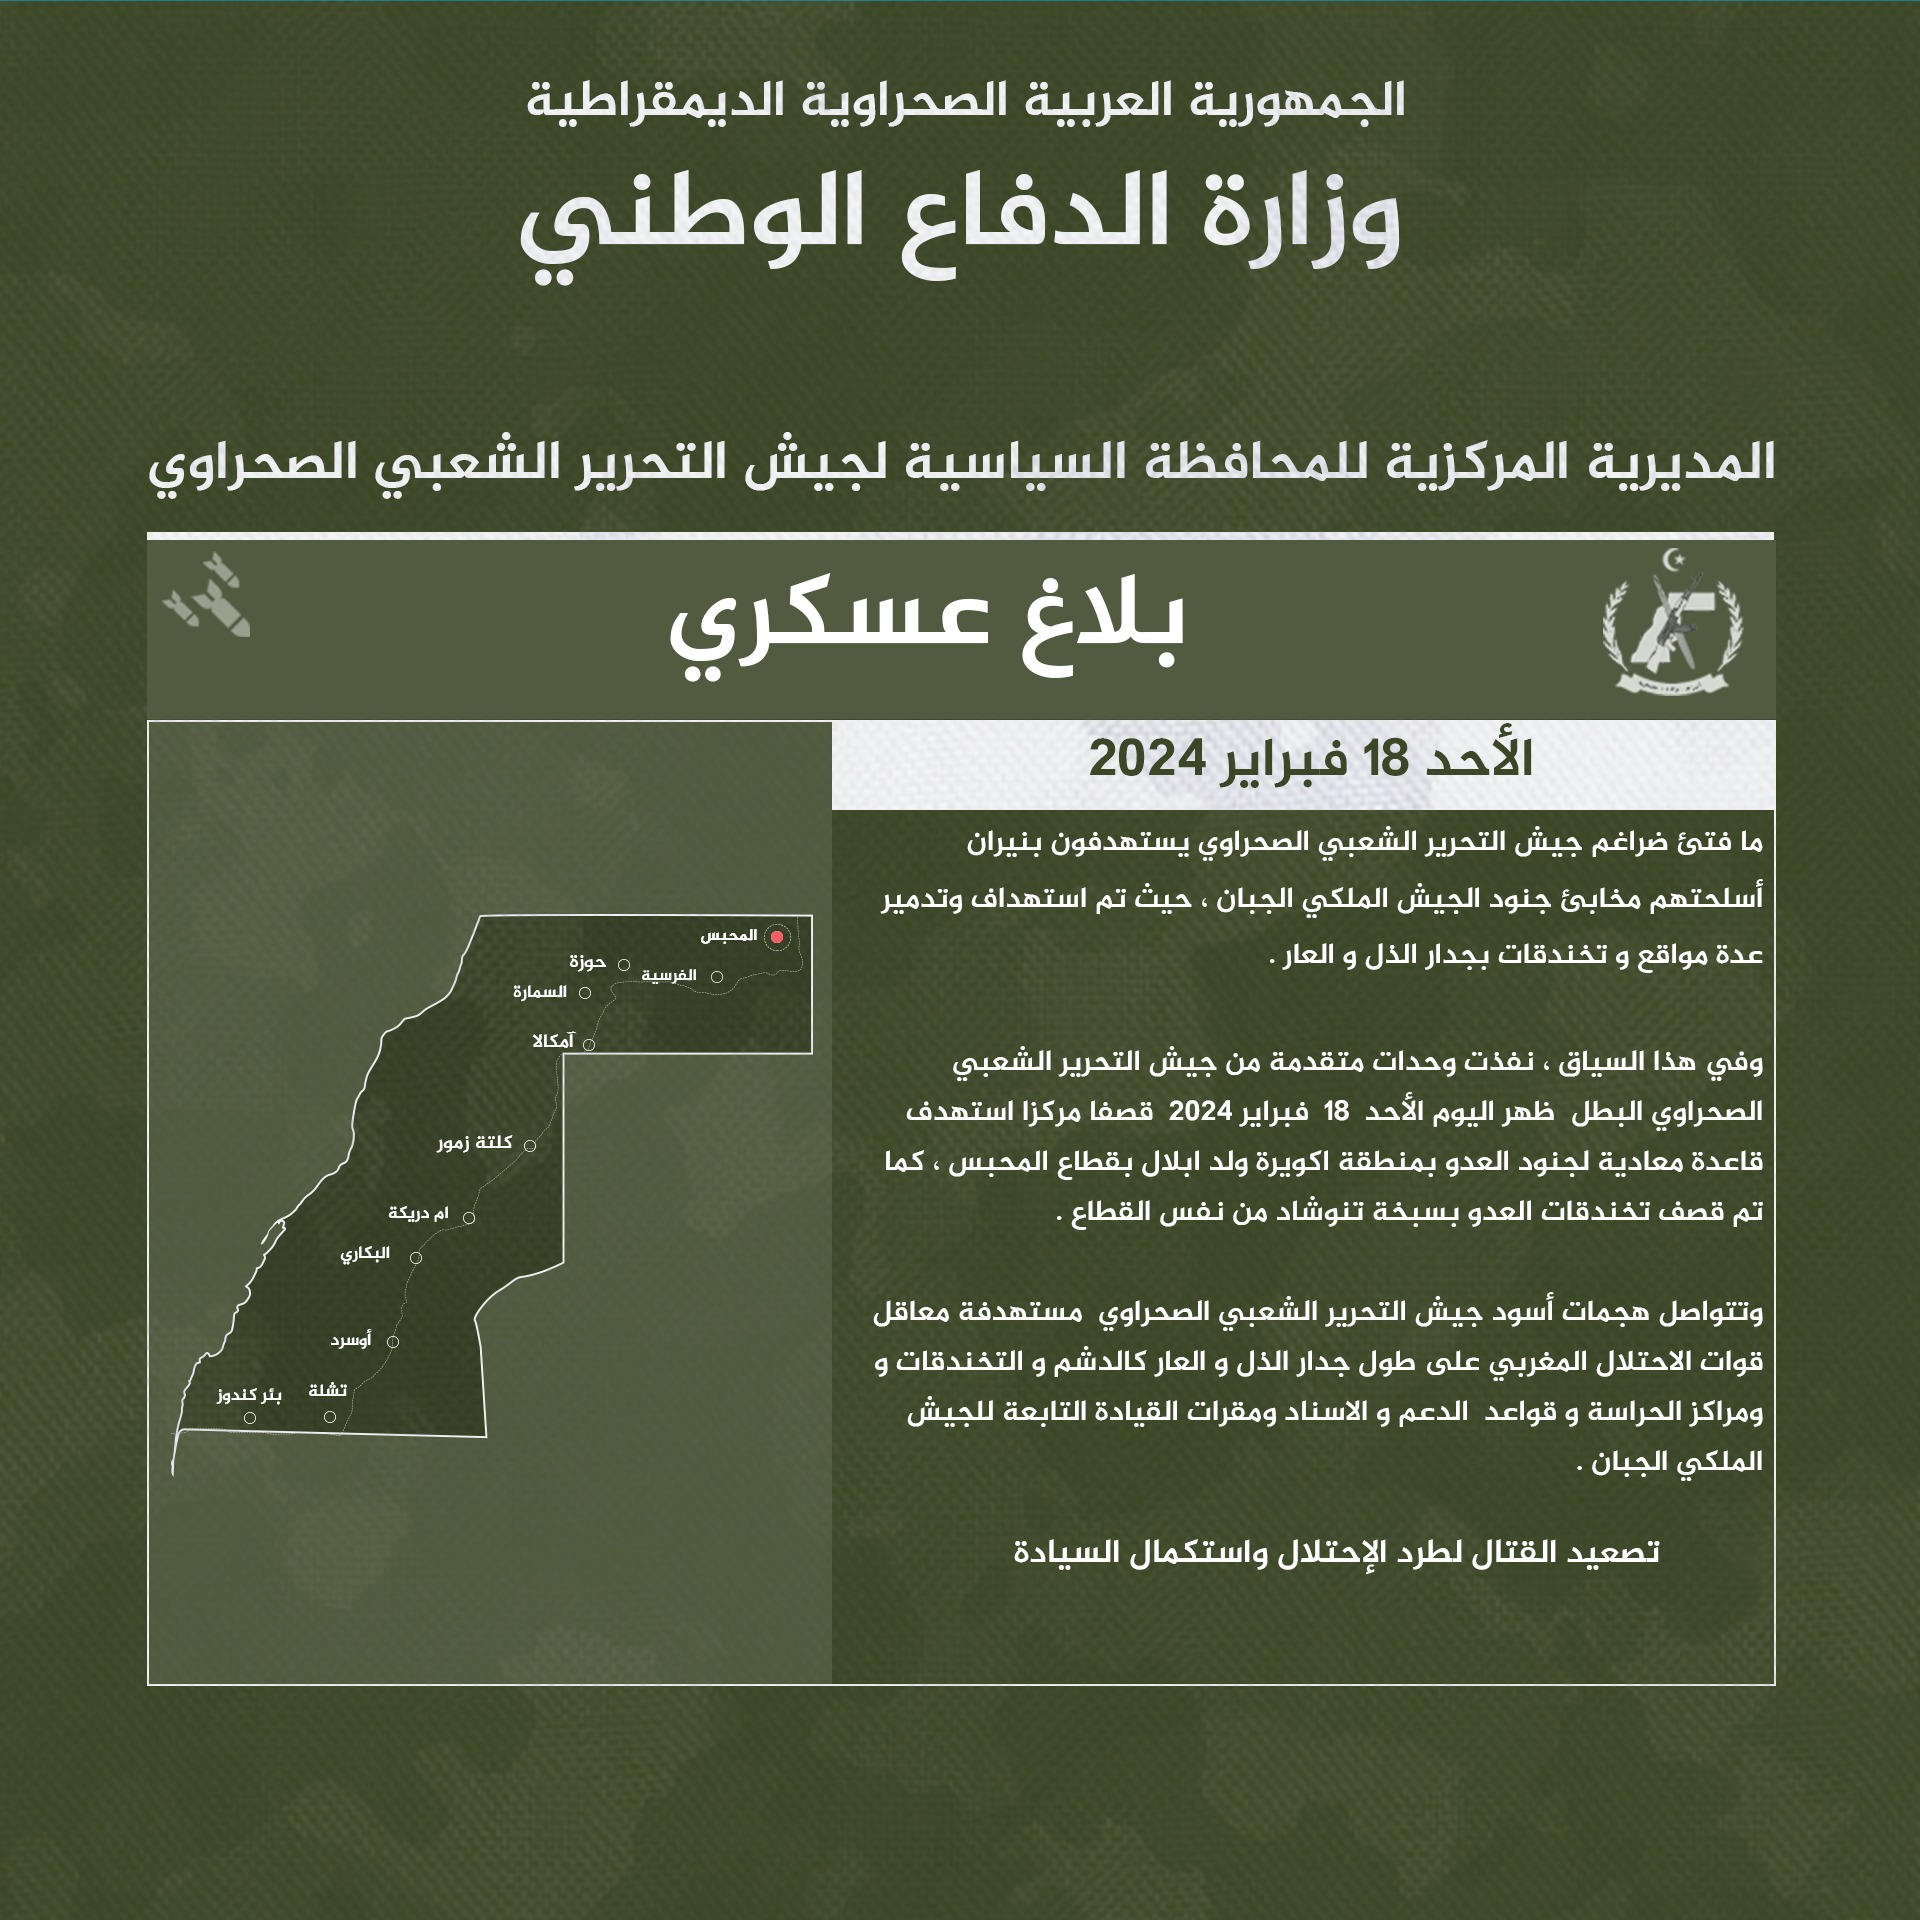 الجيش الصحراوي يستهدف قاعدة معادية لجنود العدو بمنطقة اكويرة ولد ابلال بقطاع المحبس